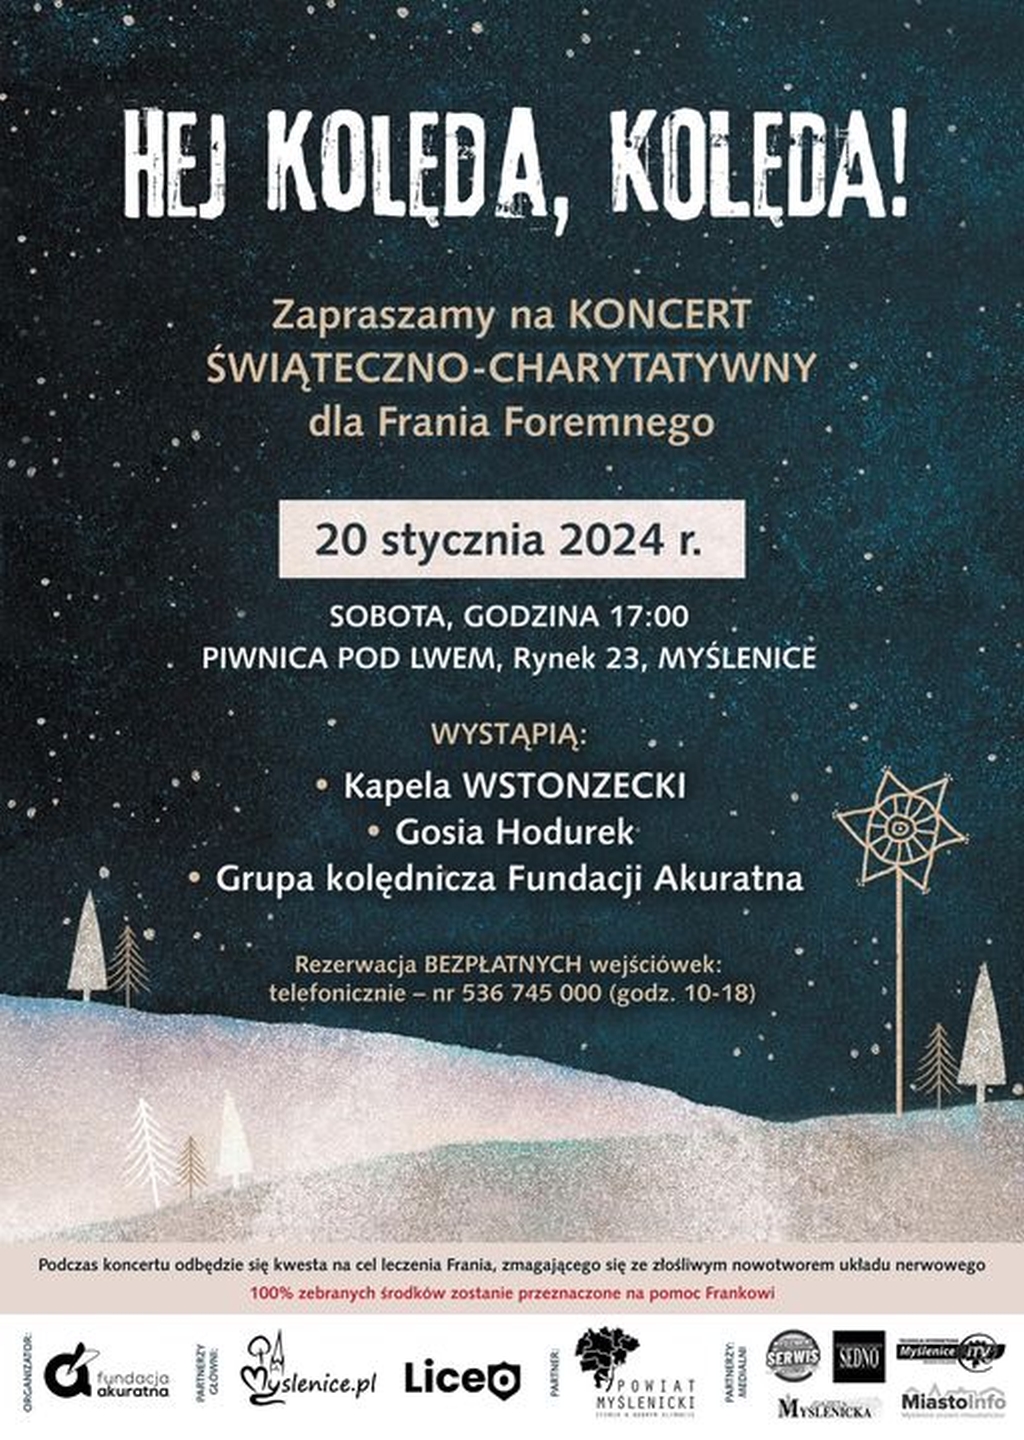 Wyjątkowy świąteczno-charytatywny koncert w Myślenicach!